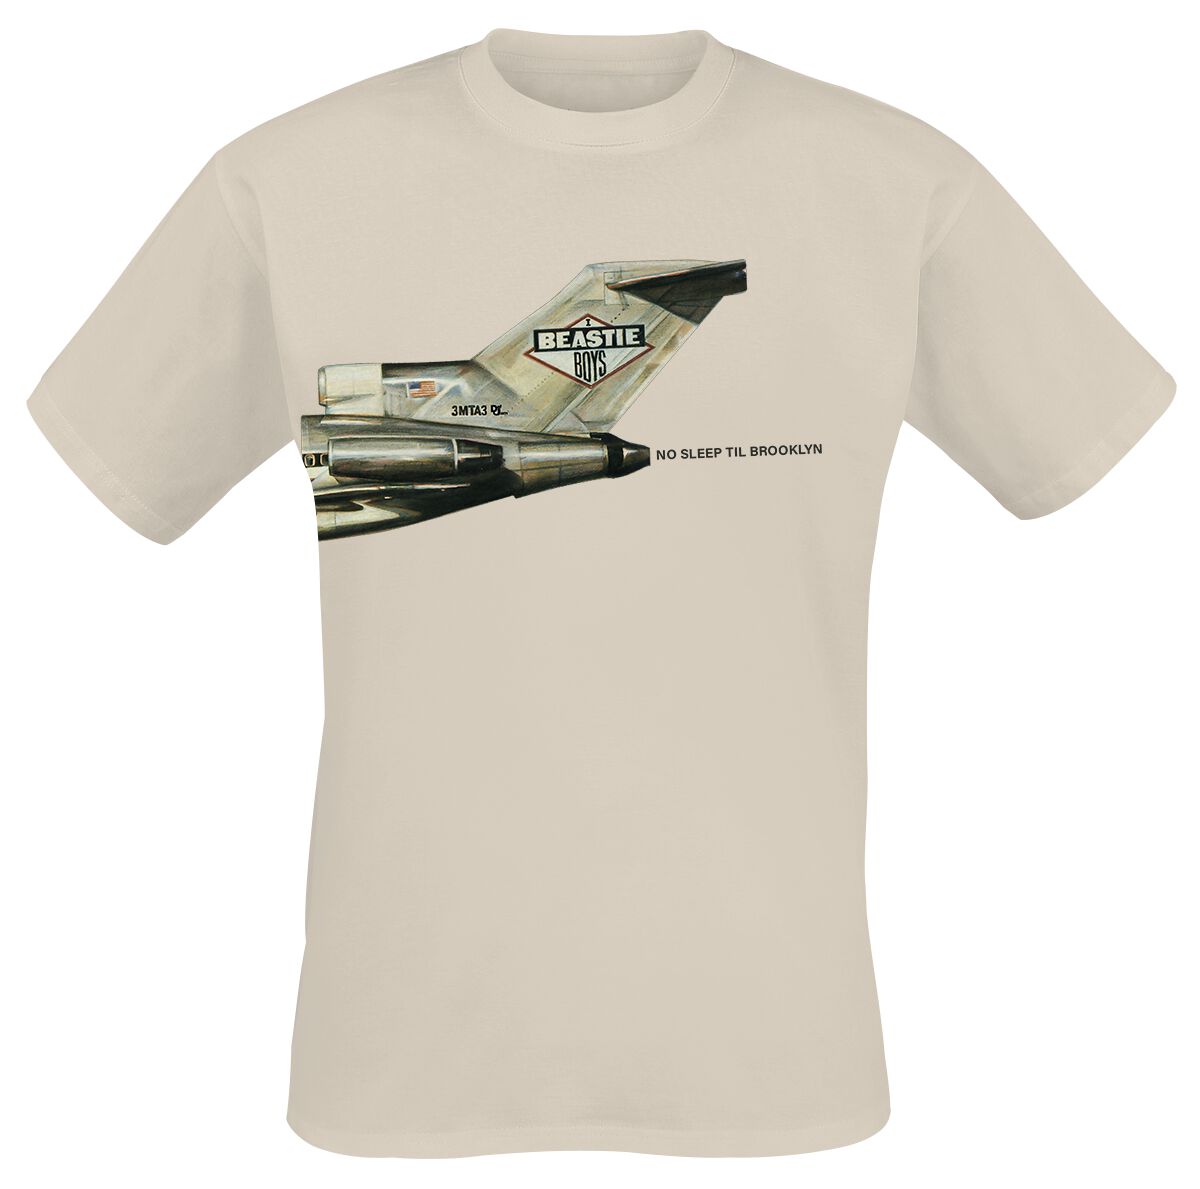 Beastie Boys T-Shirt - No Sleep Til Brooklyn Plane - S bis 3XL - für Männer - Größe 3XL - sand  - Lizenziertes Merchandise!